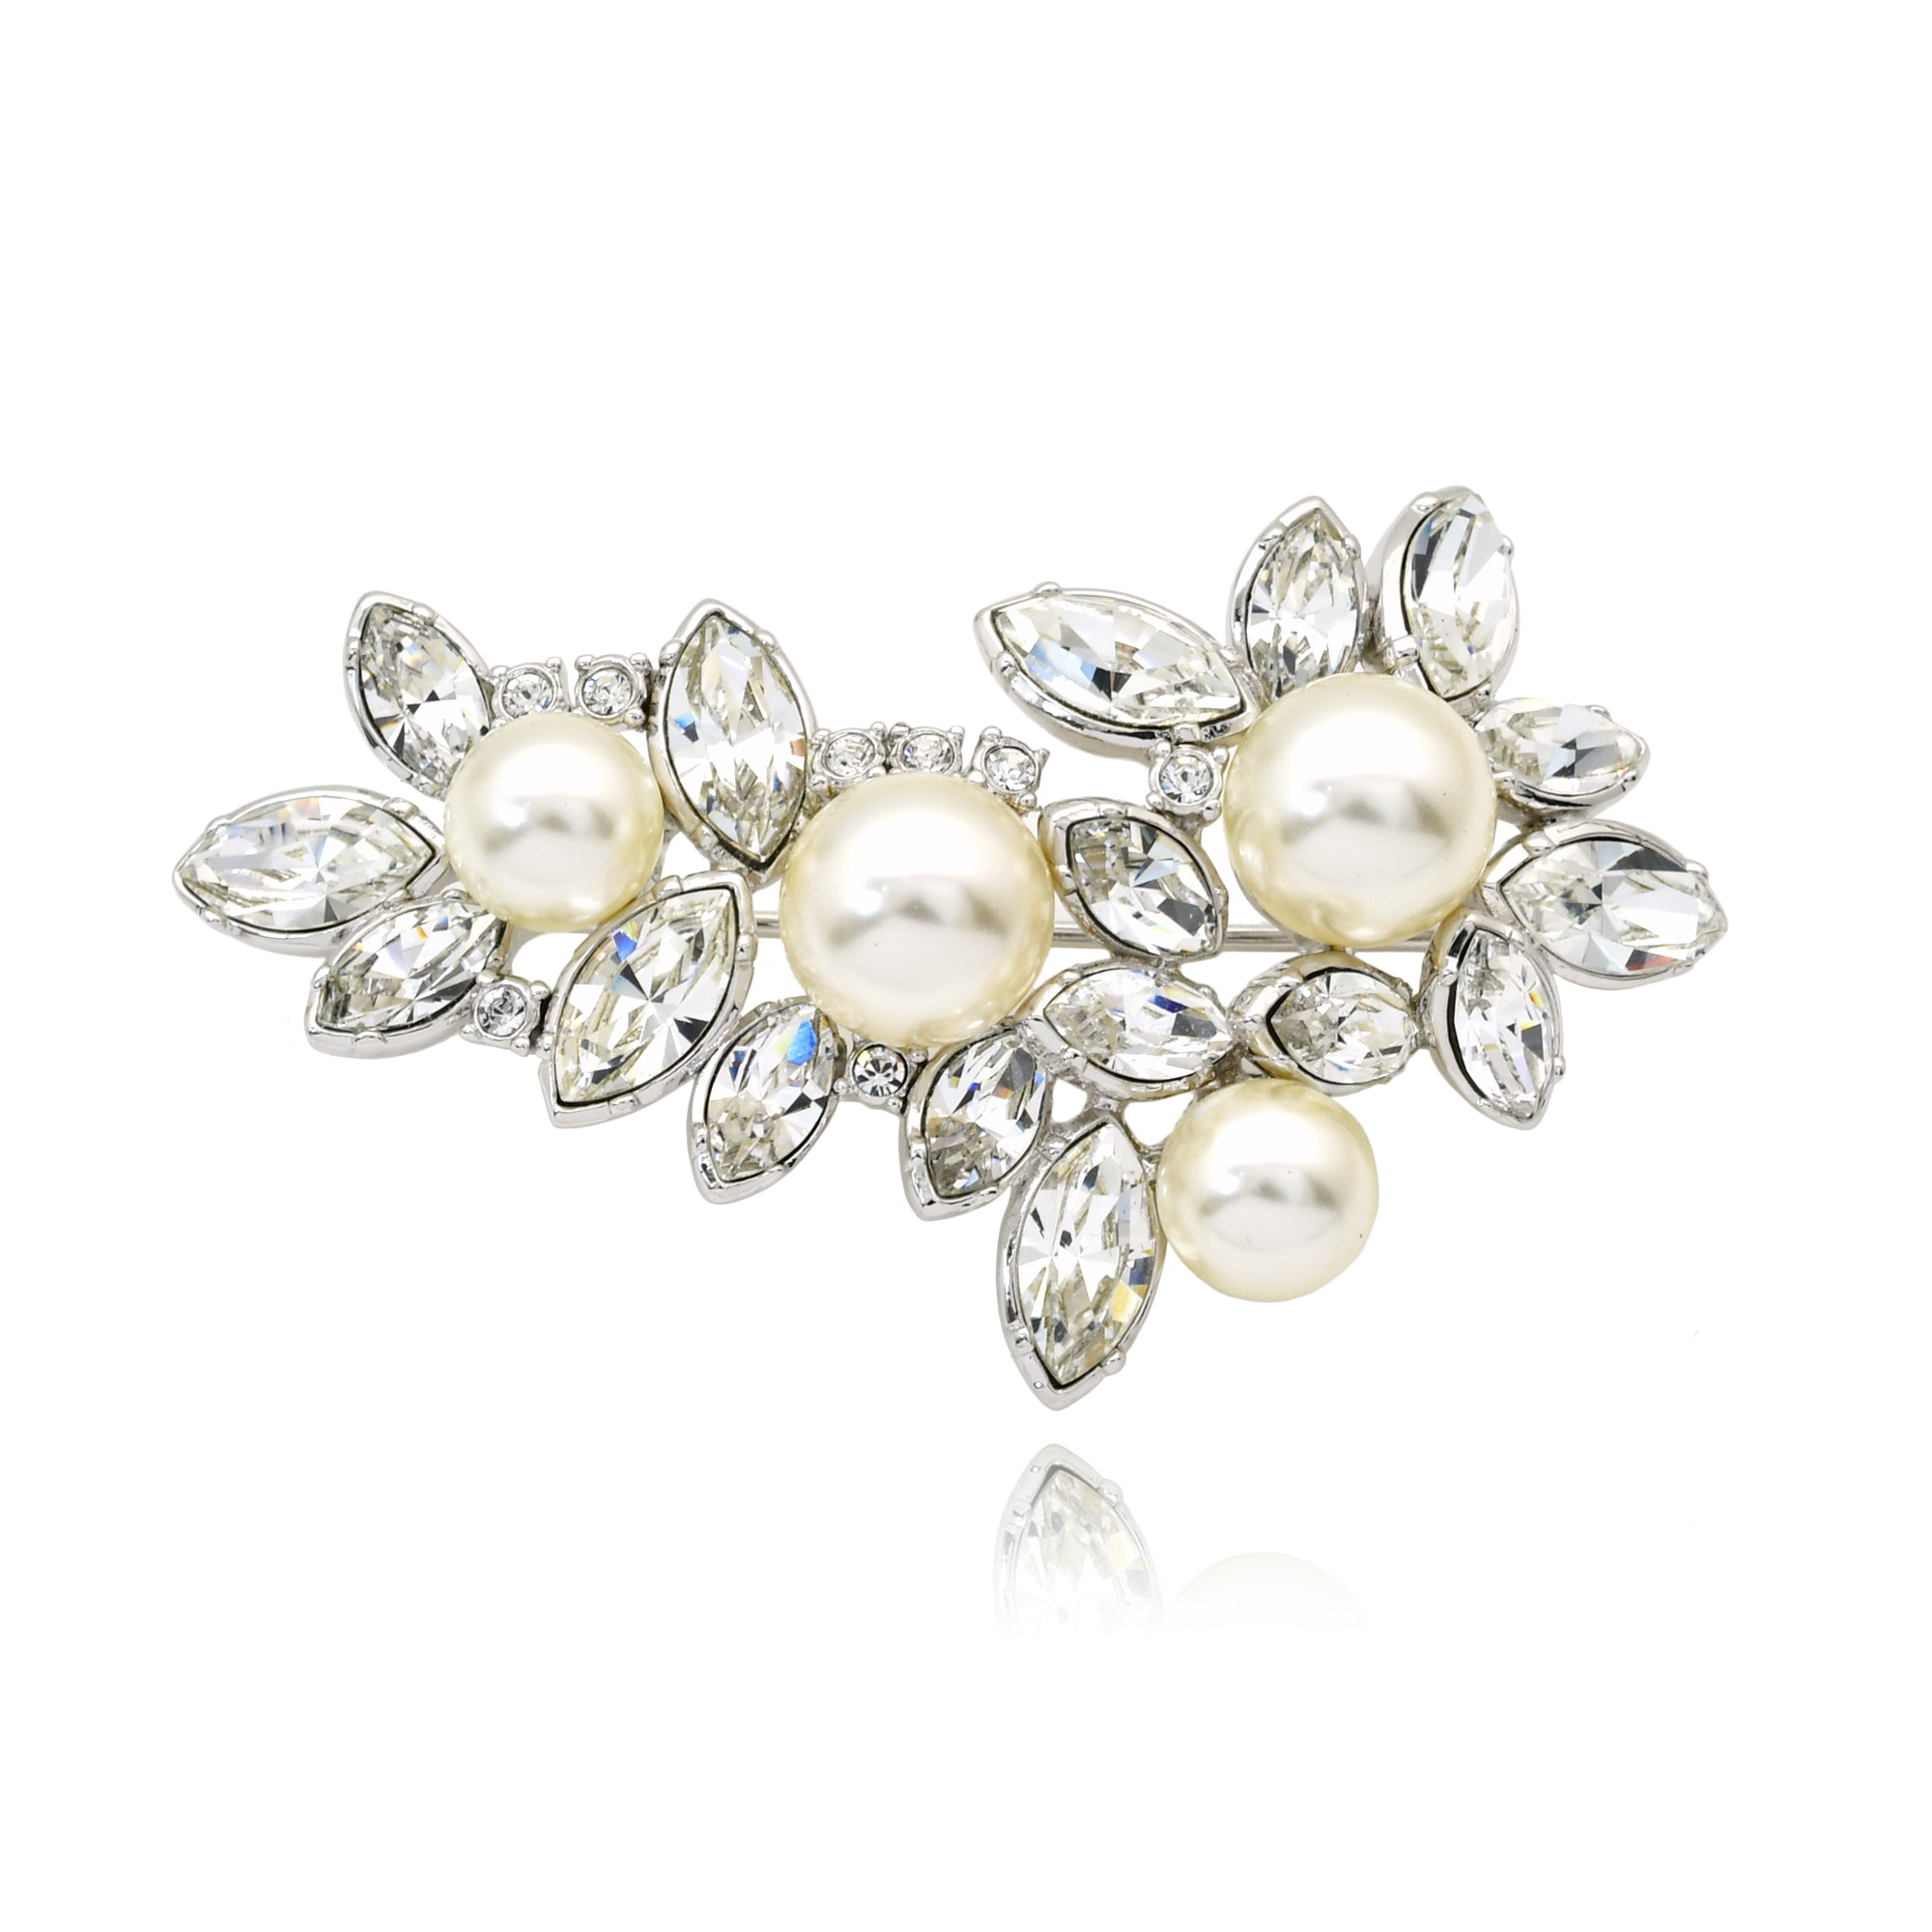 Perlene brooch